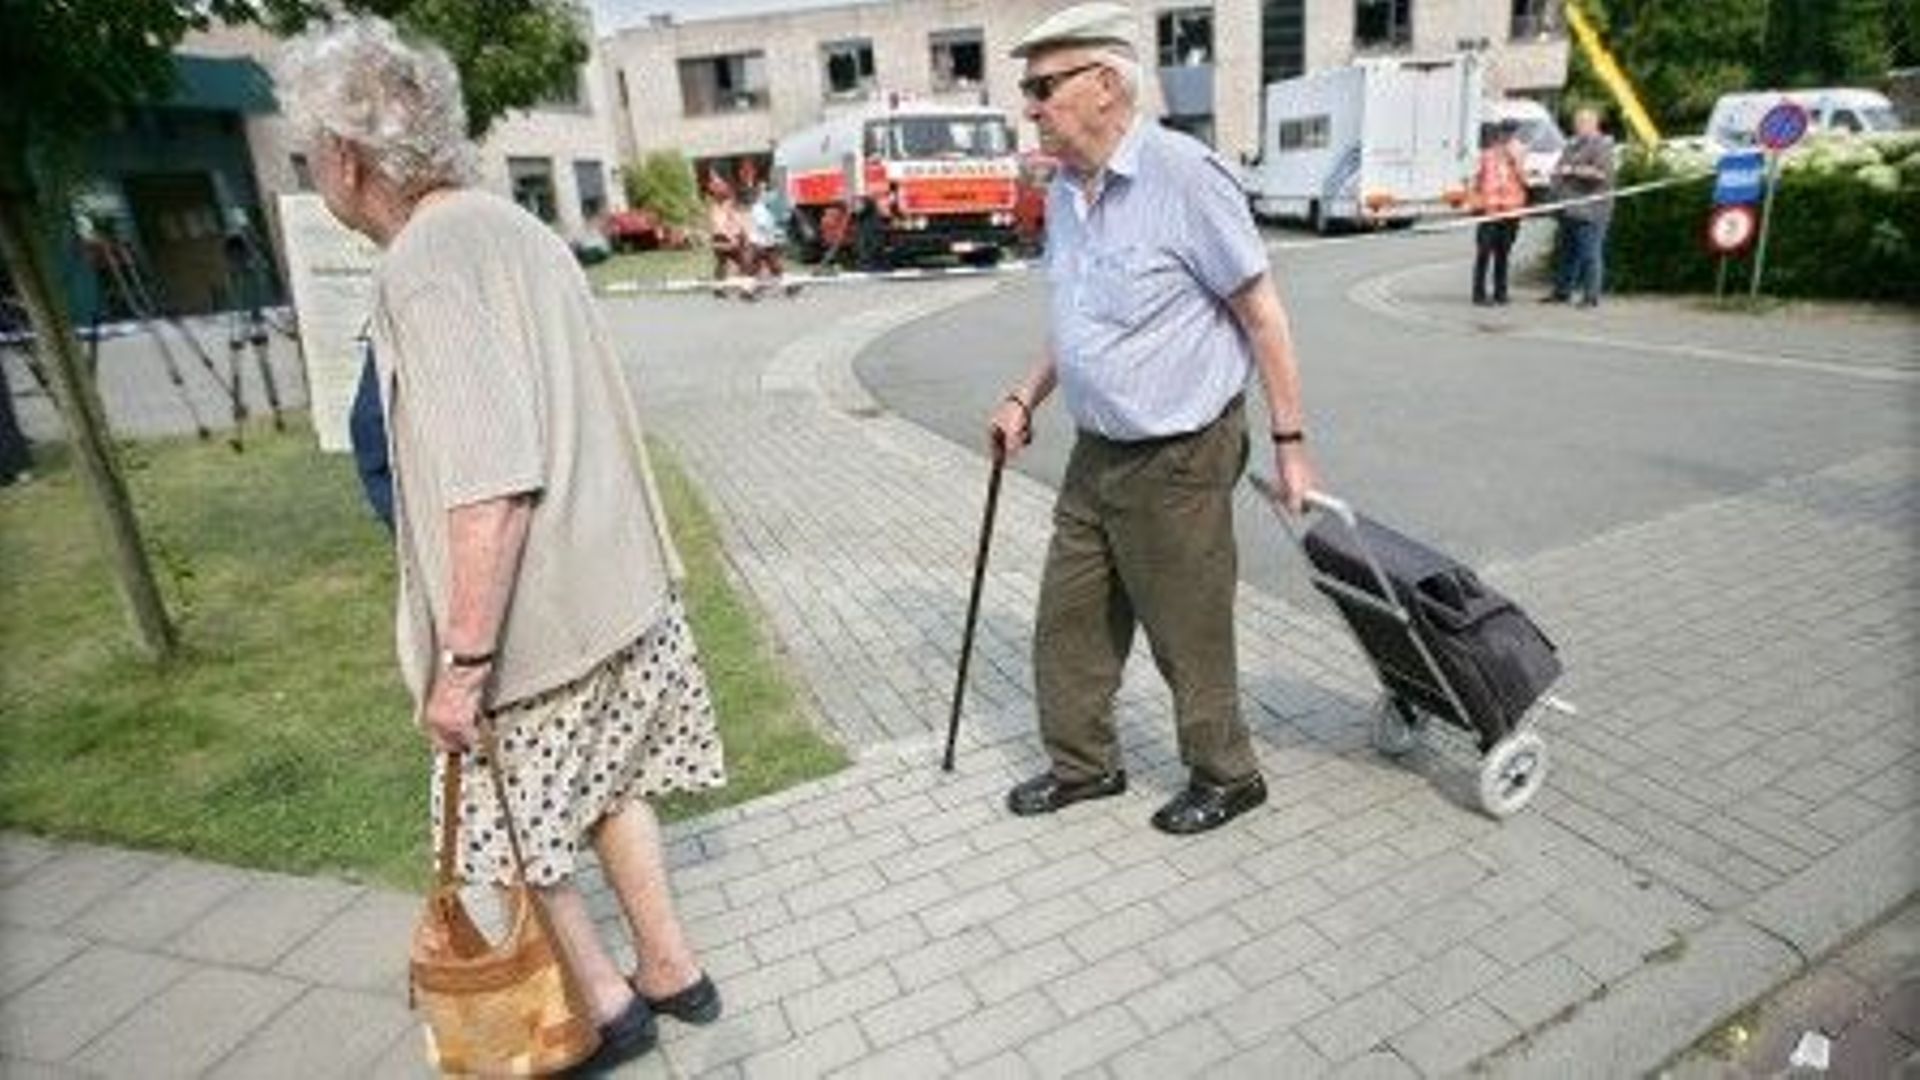 reformer-les-pensions-permettrait-de-reduire-le-risque-de-pauvrete-chez-les-seniors